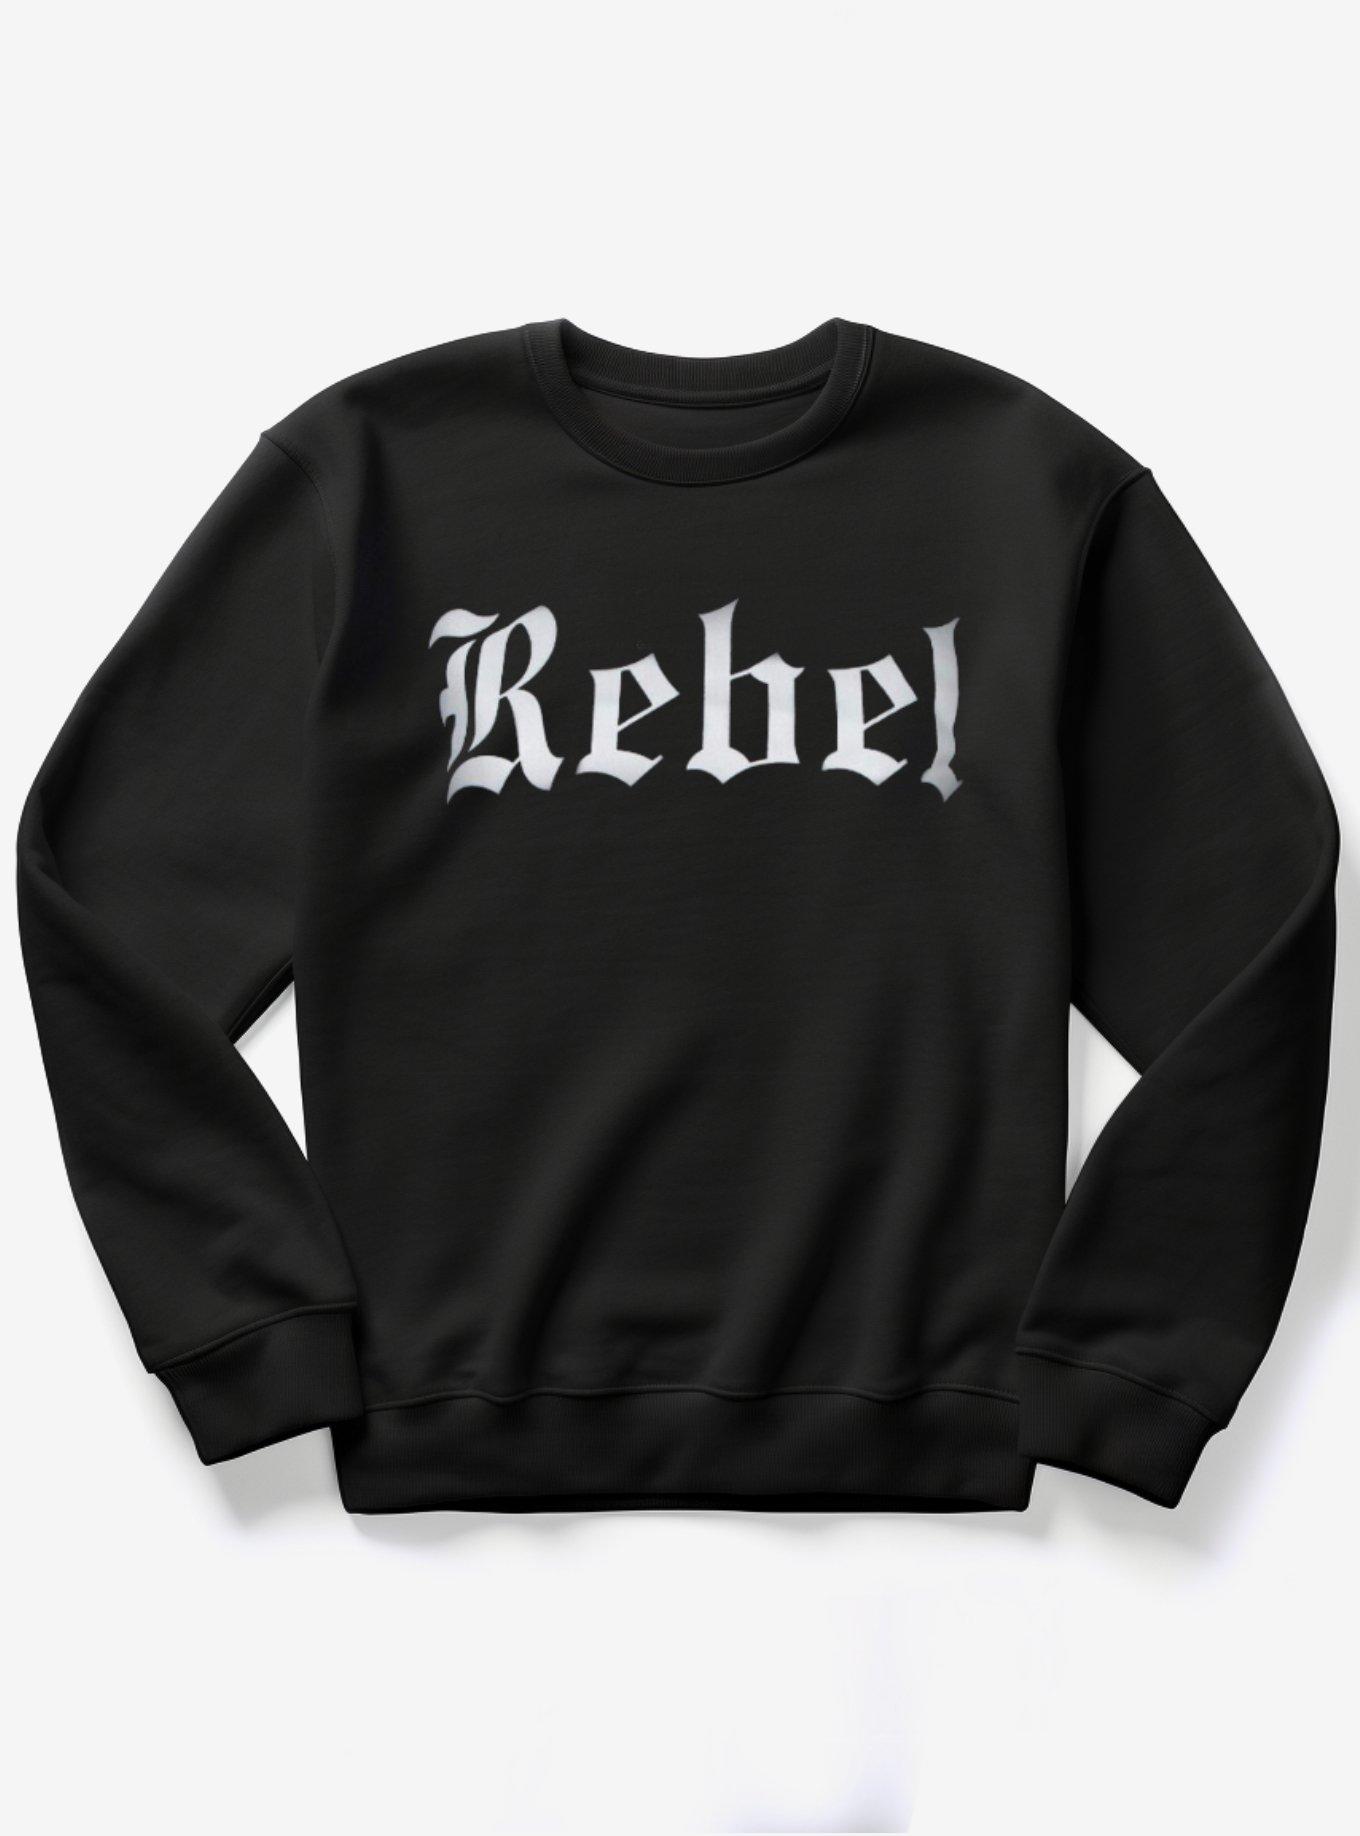 Rebel Goth Sweater